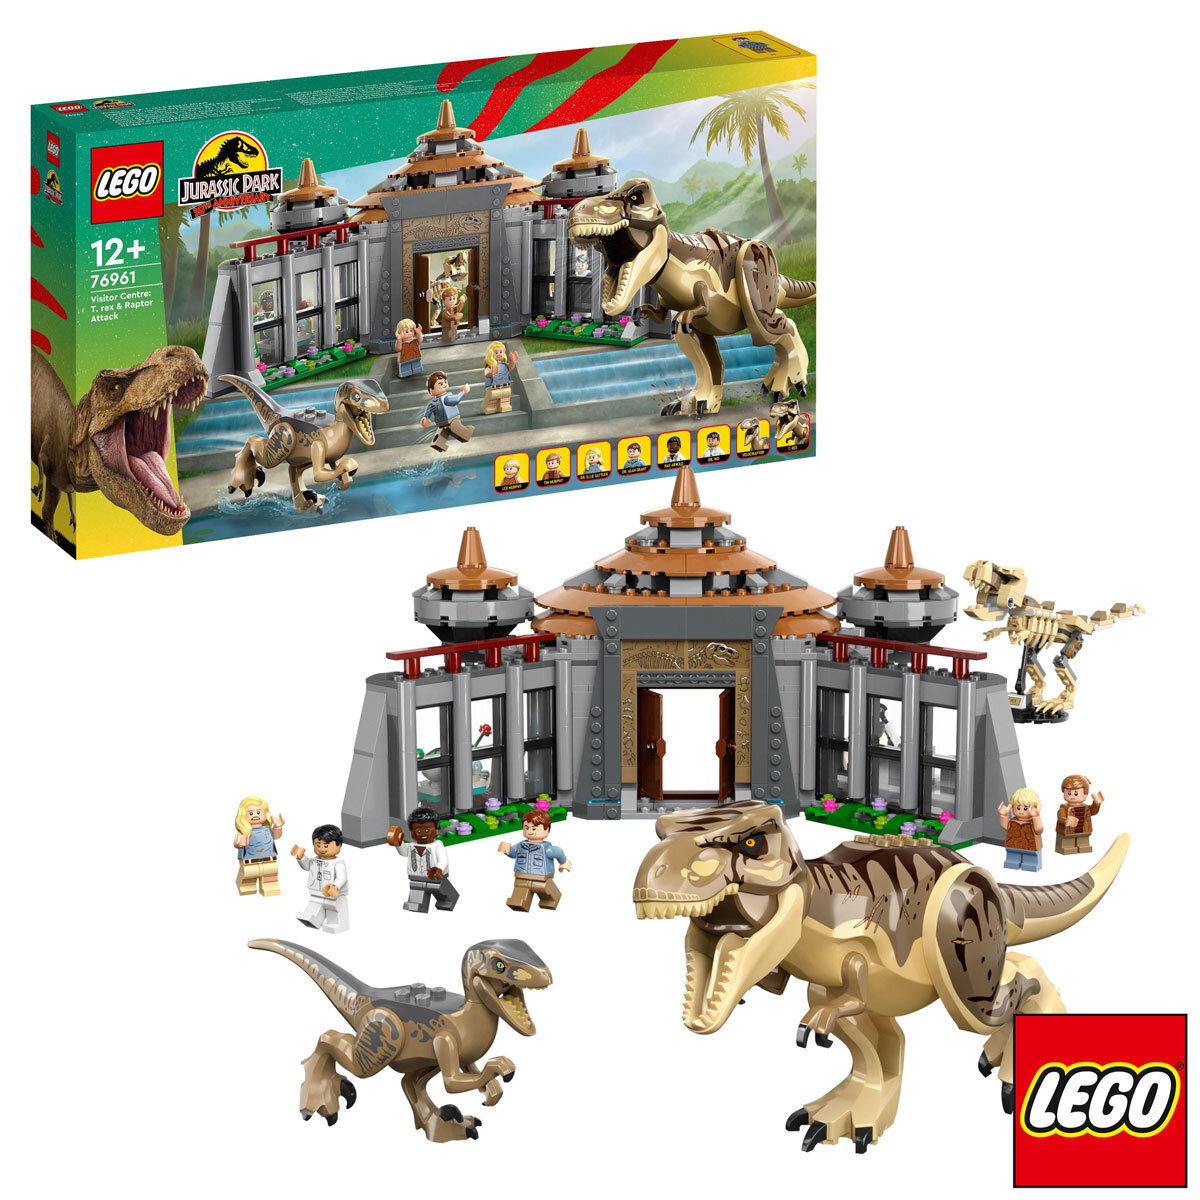 LEGO Jurassic World for PC Game Steam Key Region Free